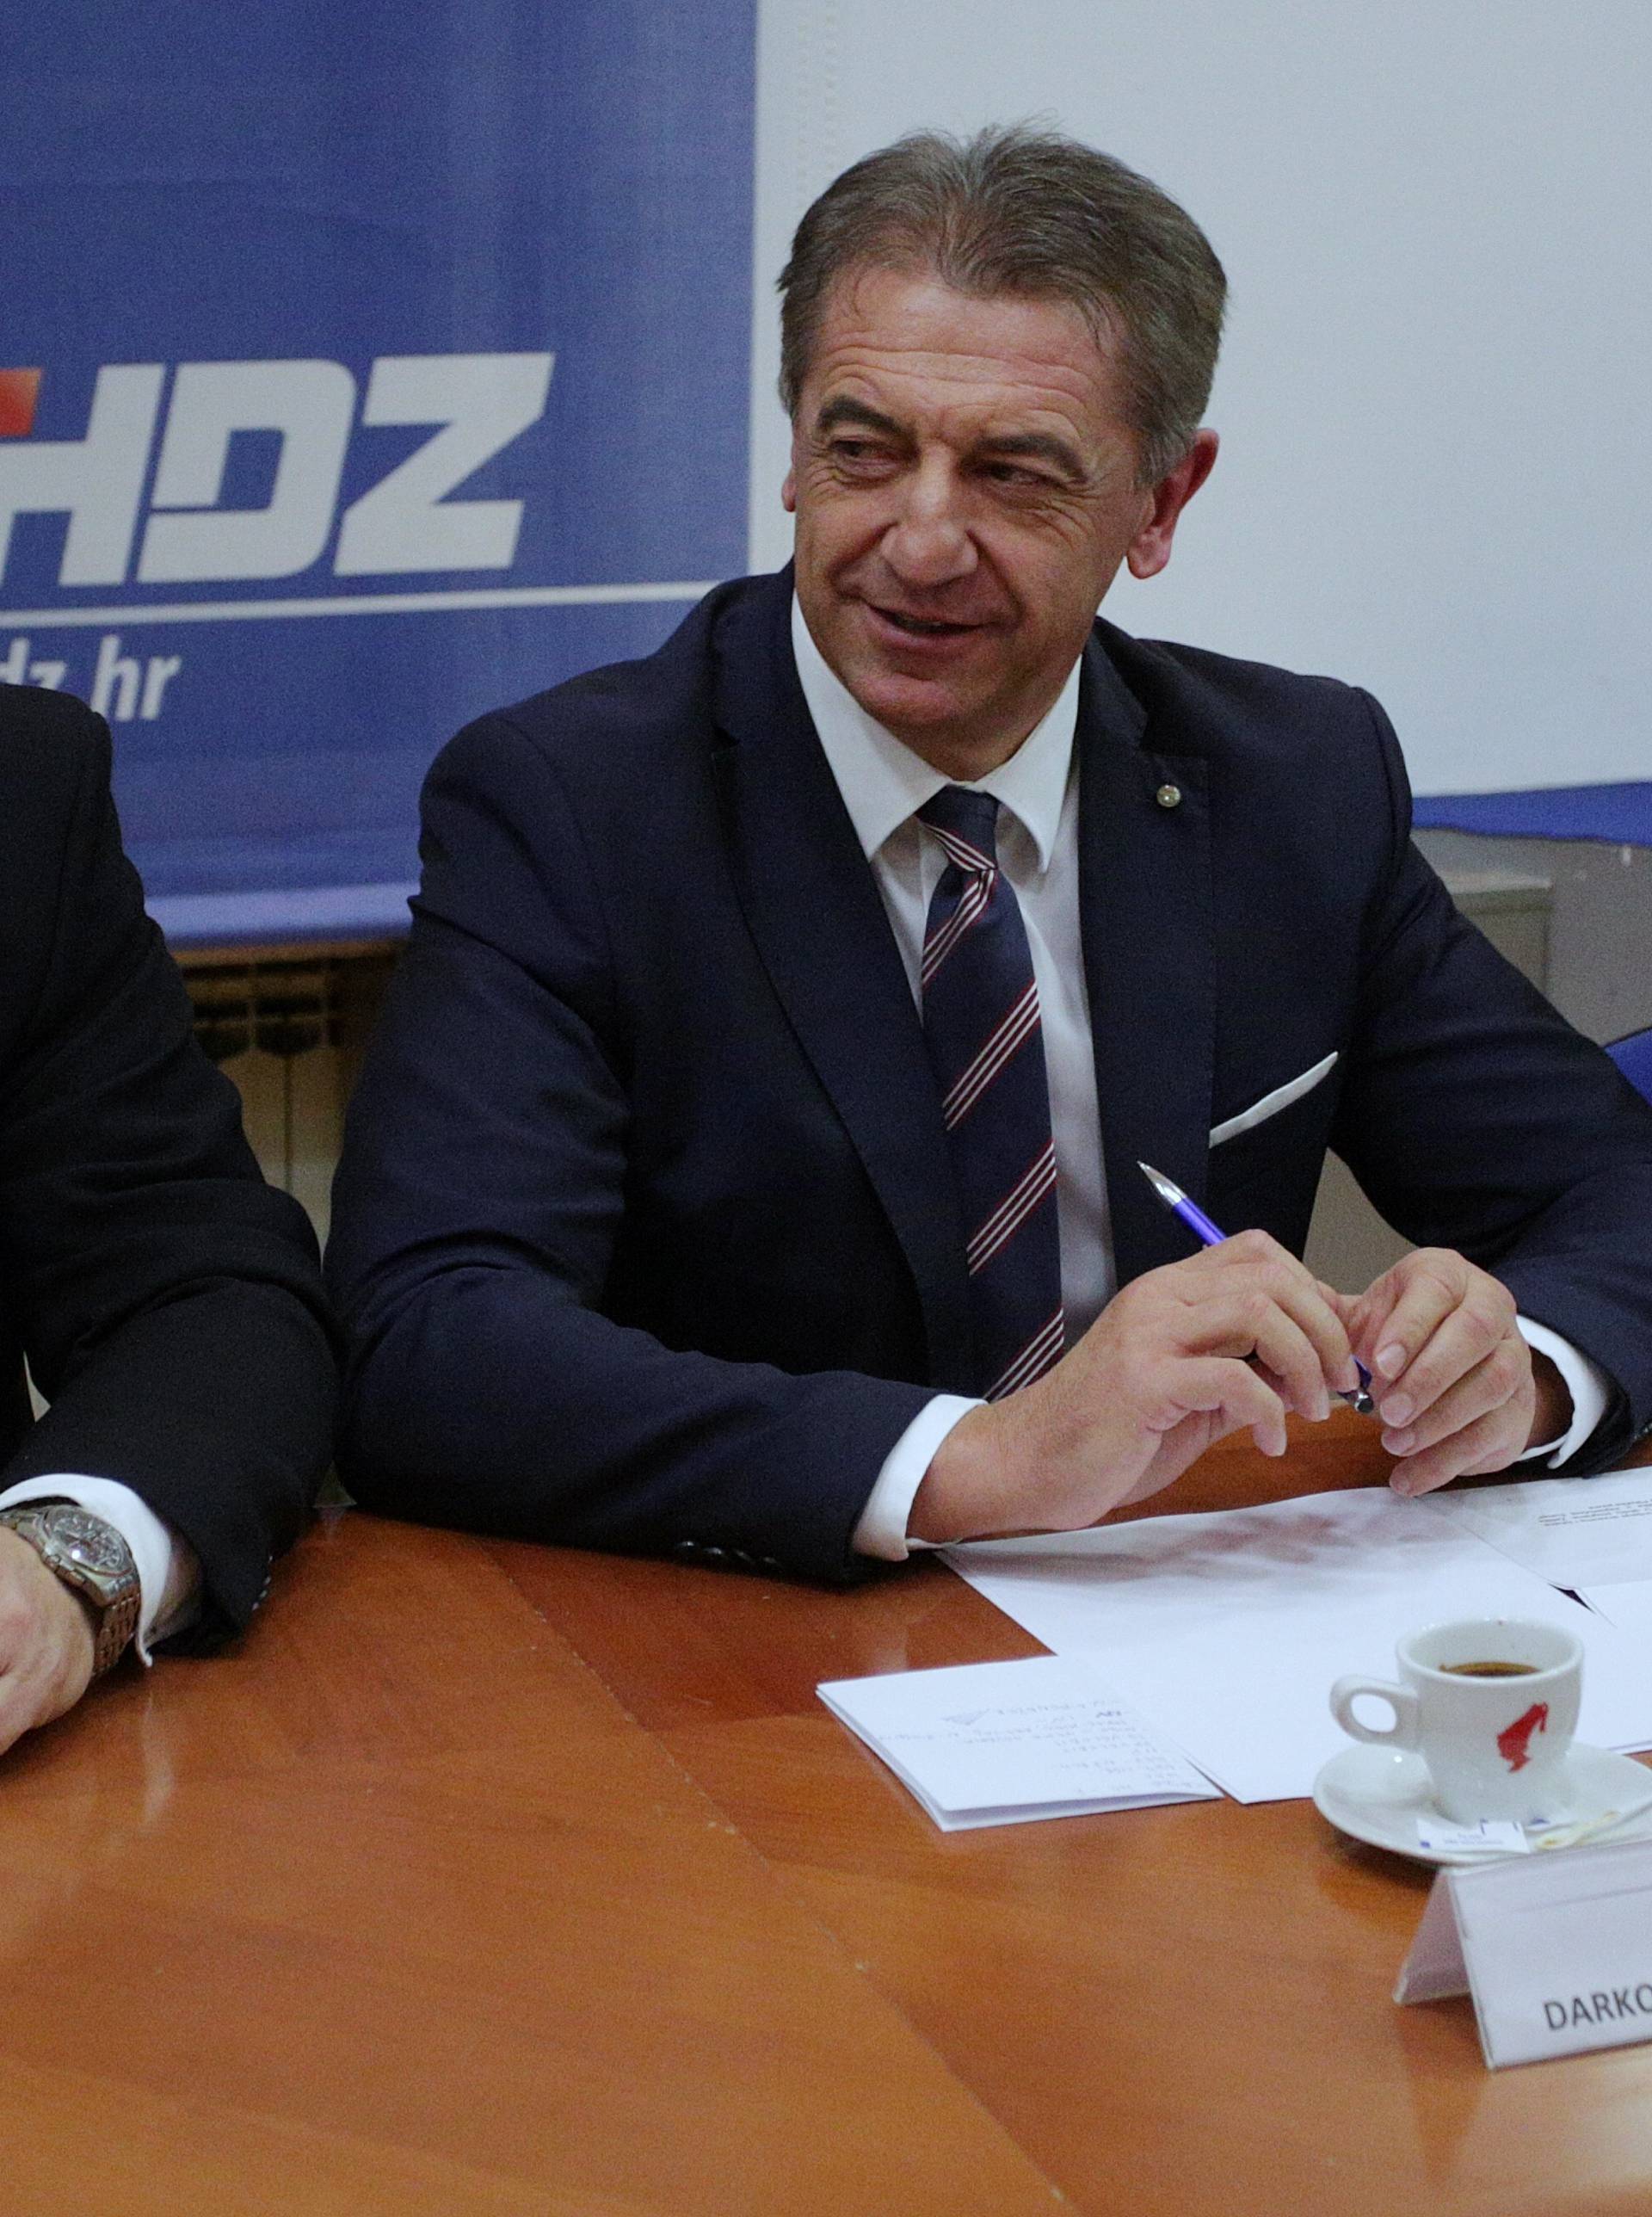 Raspušten ličko-senjski HDZ, Milinović i dalje ostaje župan...